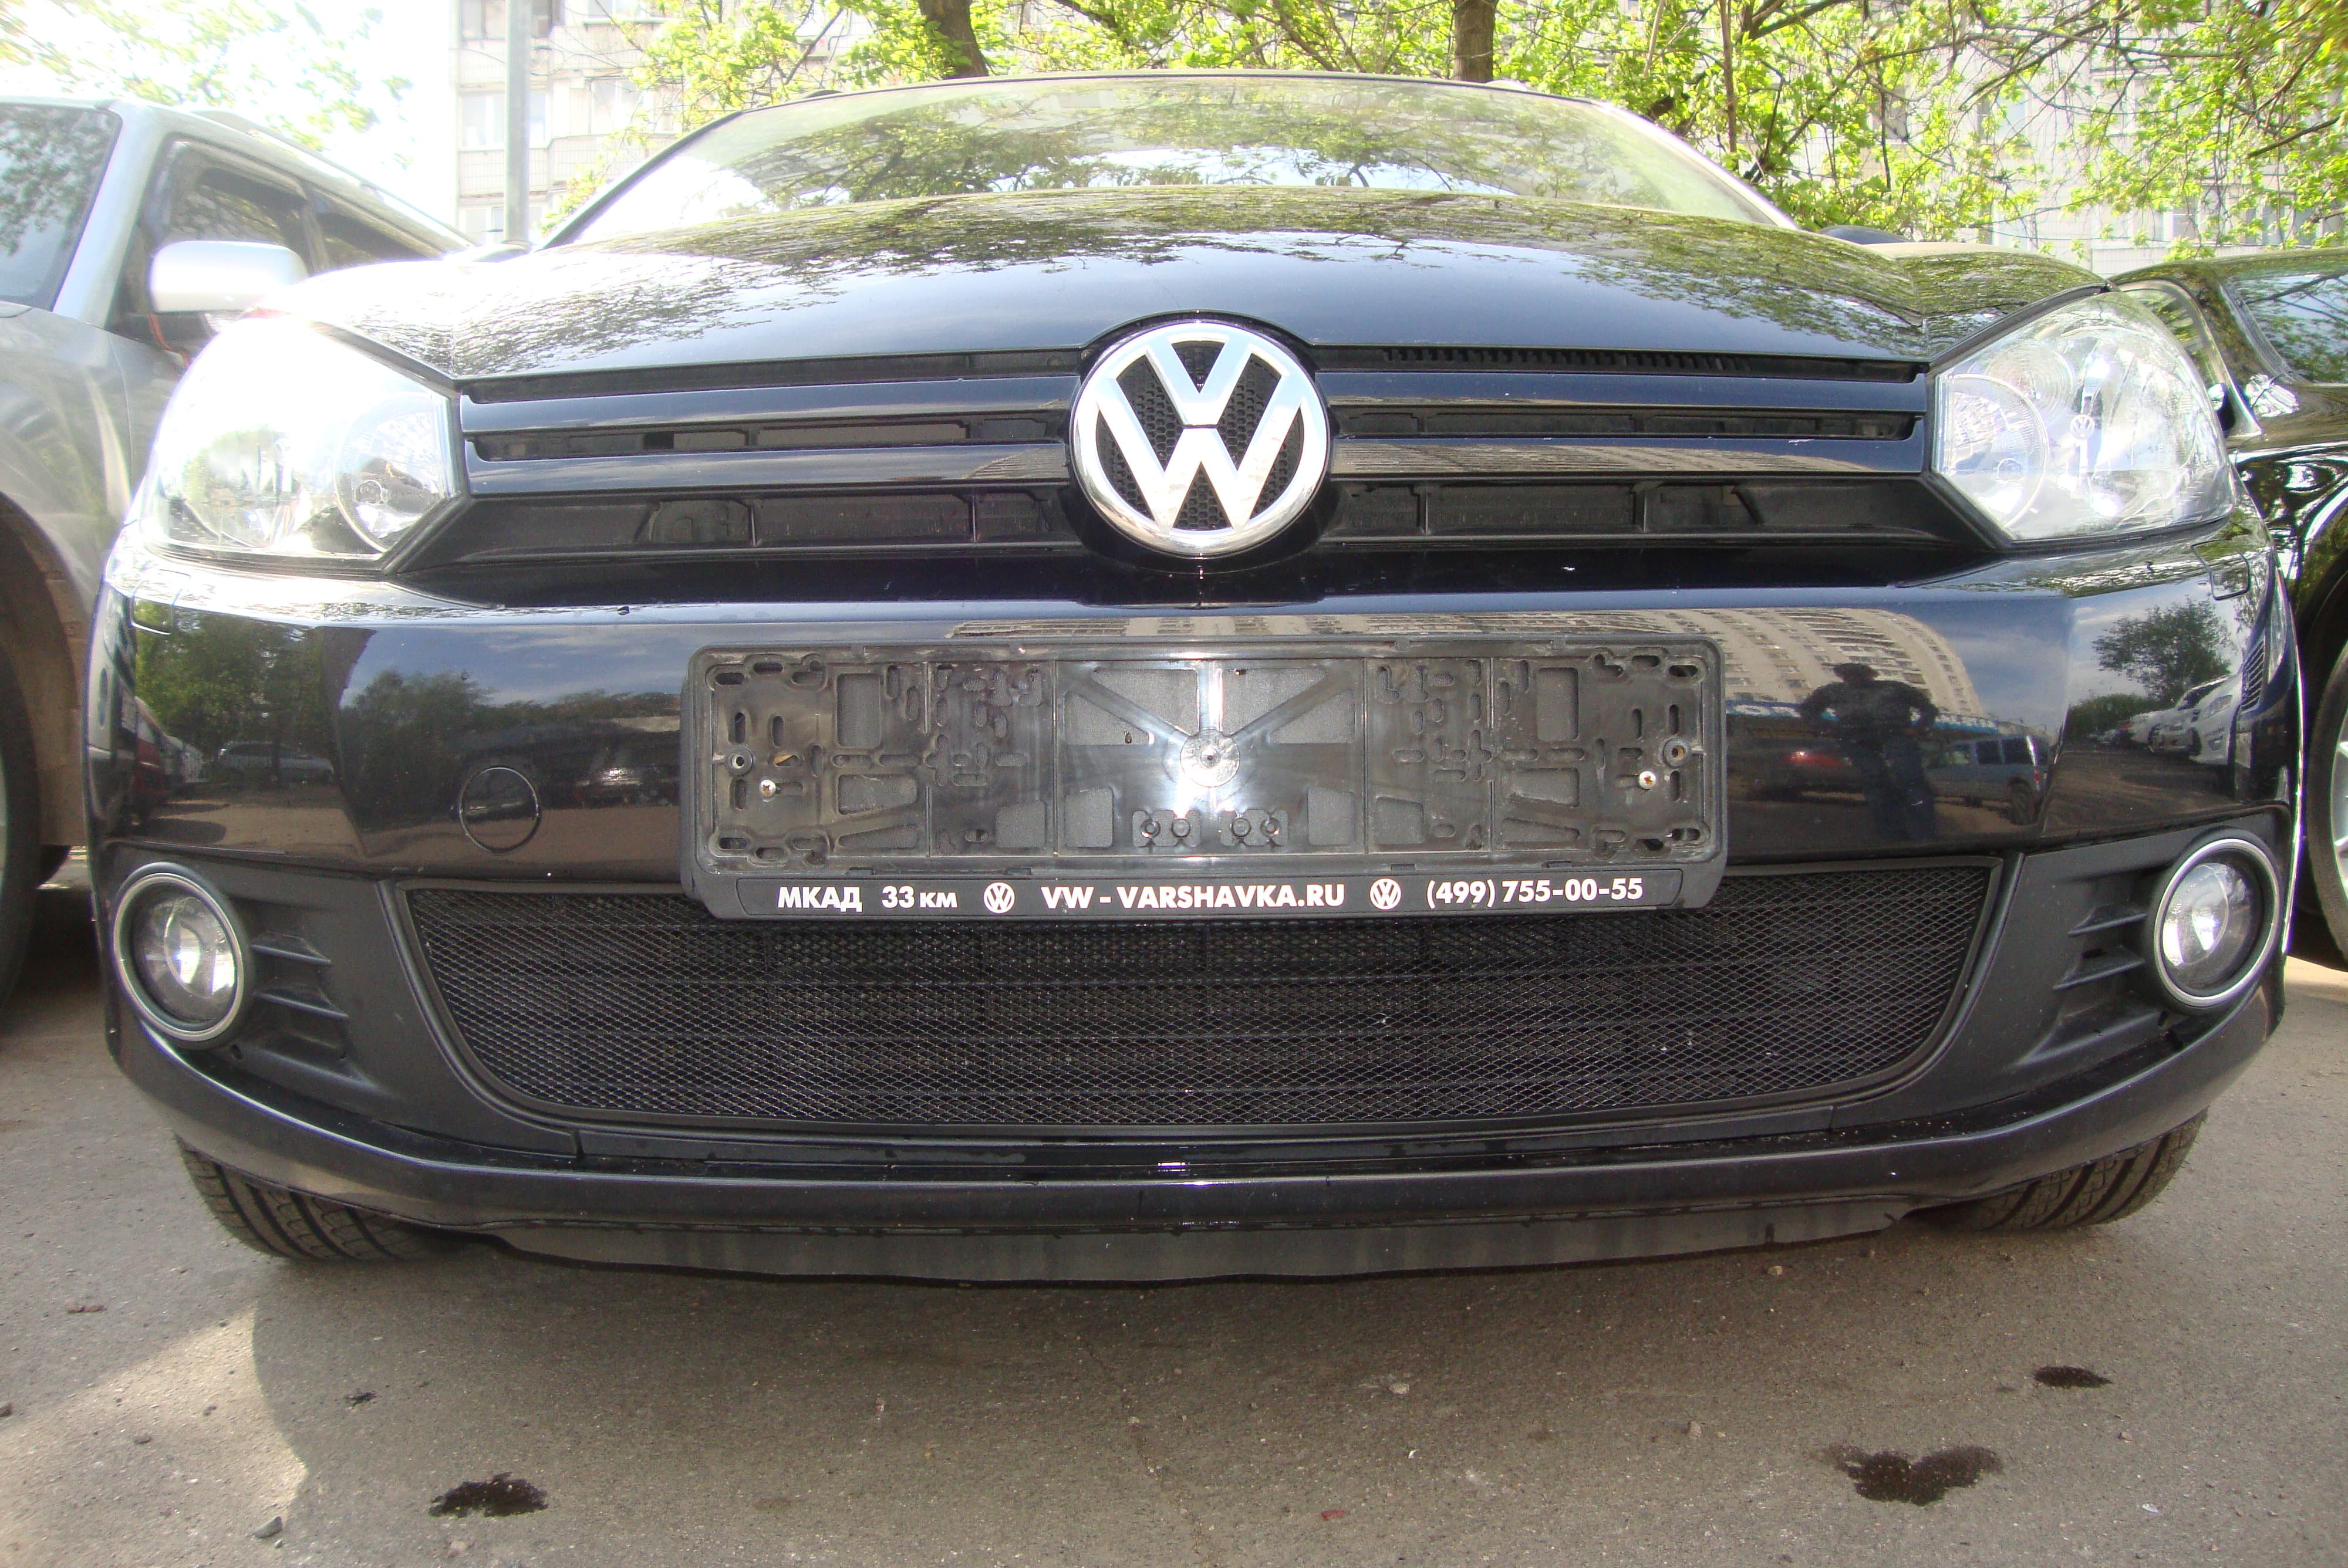 Защитная сетка радиатора ProtectGrille для Volkswagen Golf VI (2008-2012 Черная)